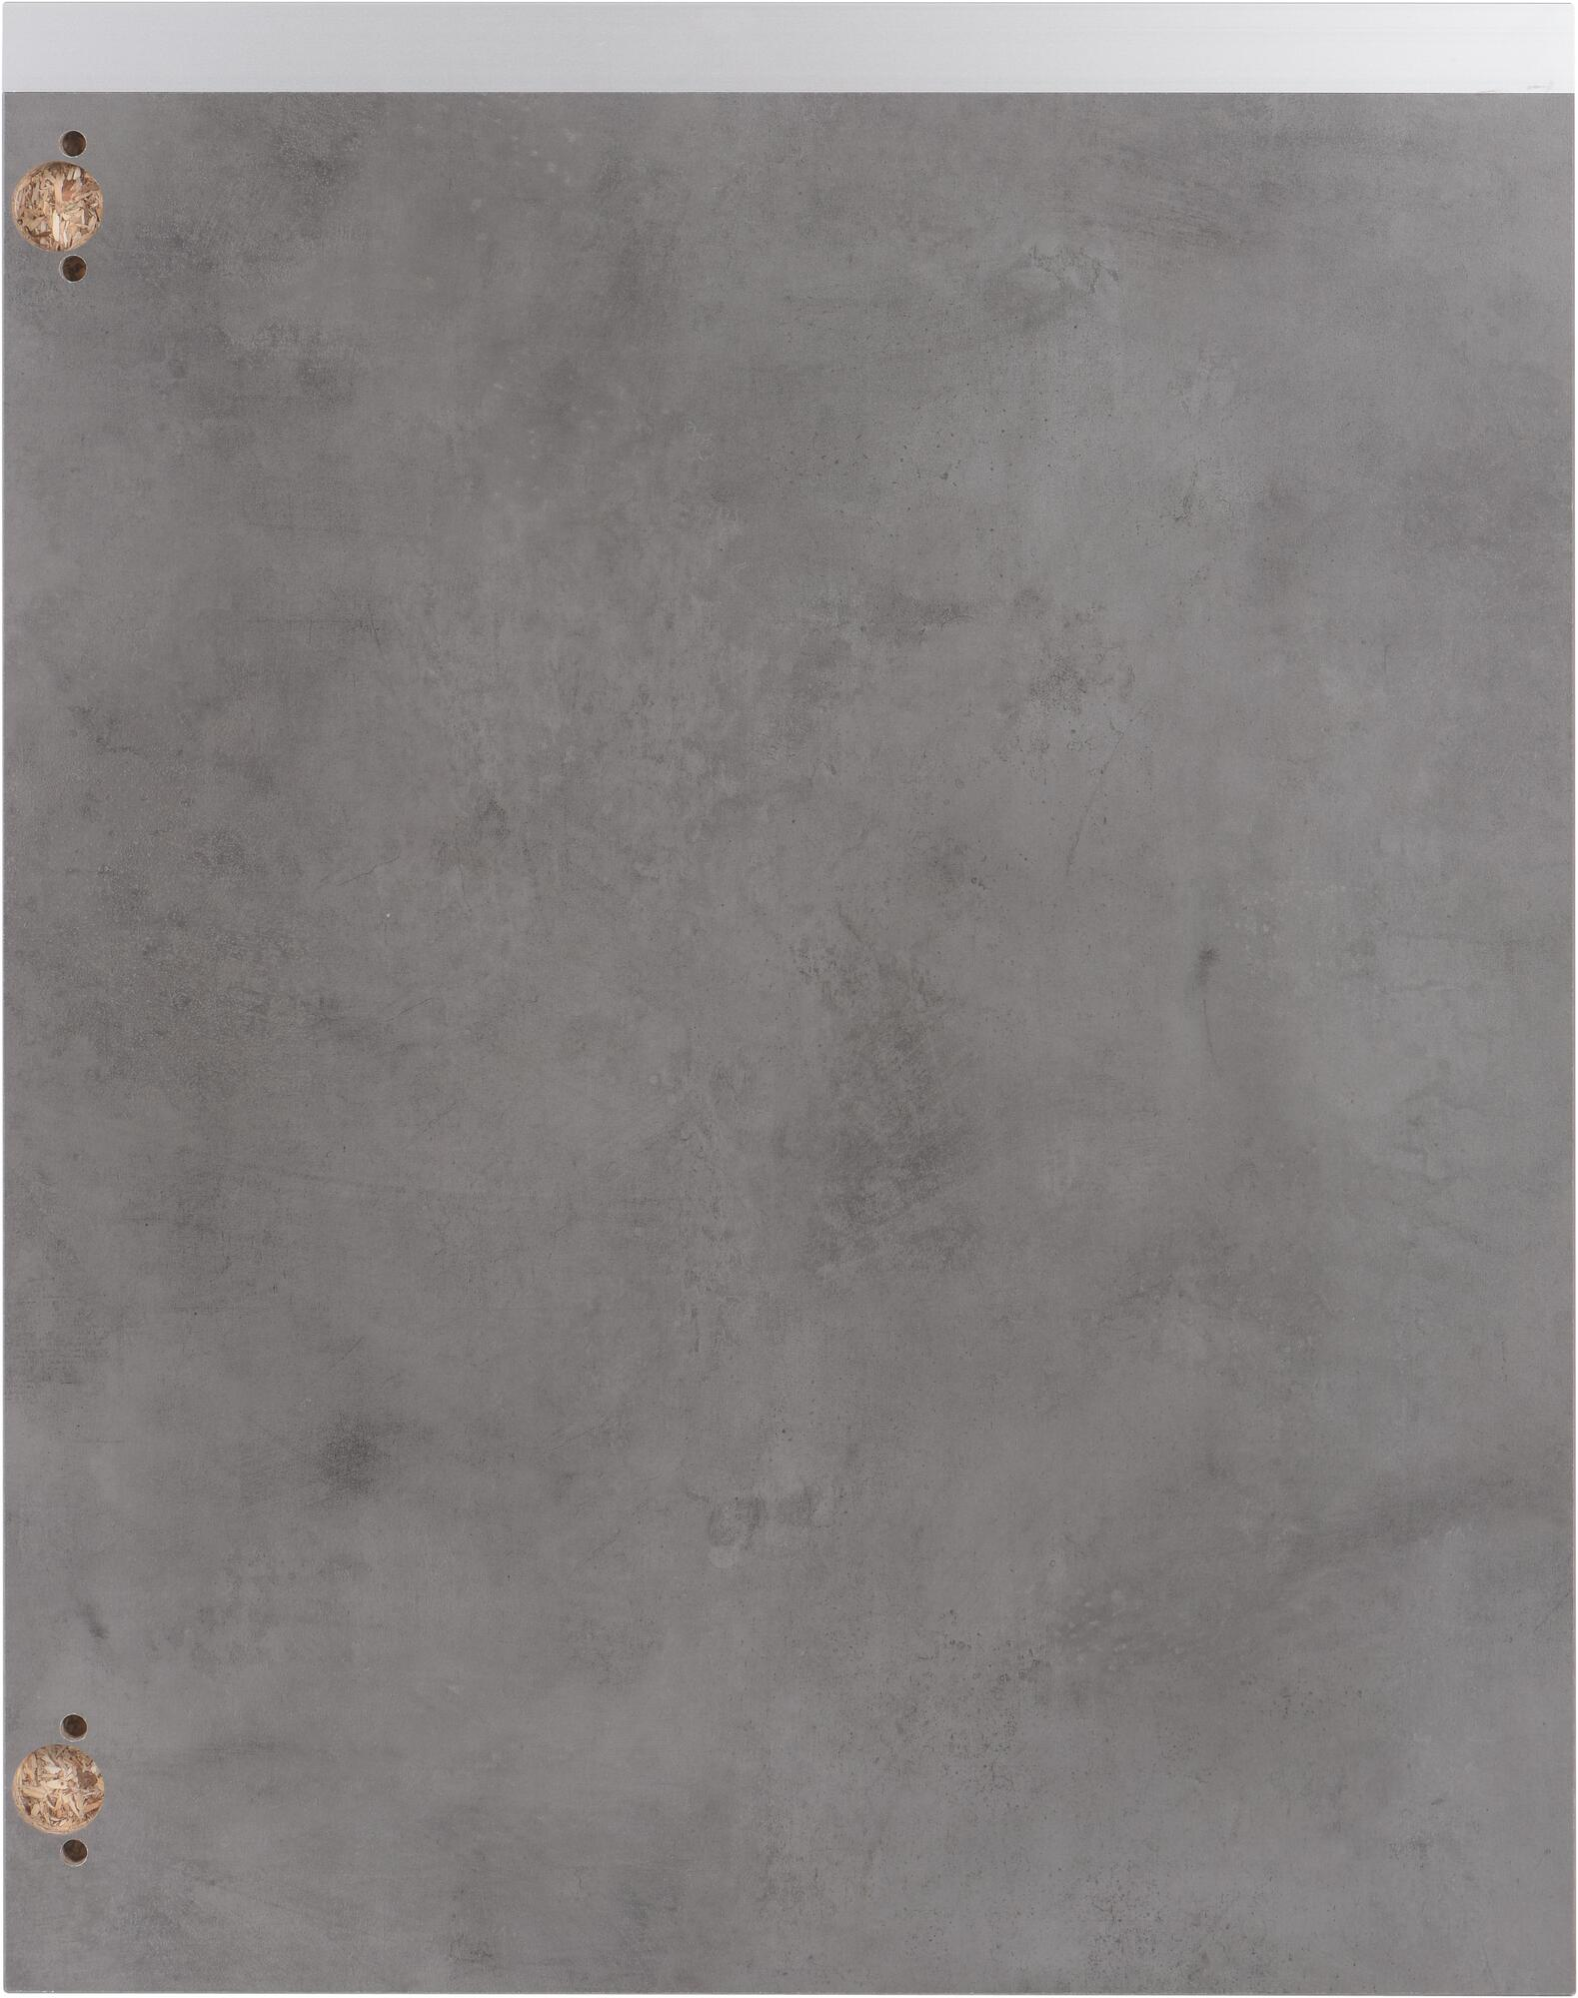 Puerta para mueble de cocina mikonos cemento oscuro 76,8x60 cm